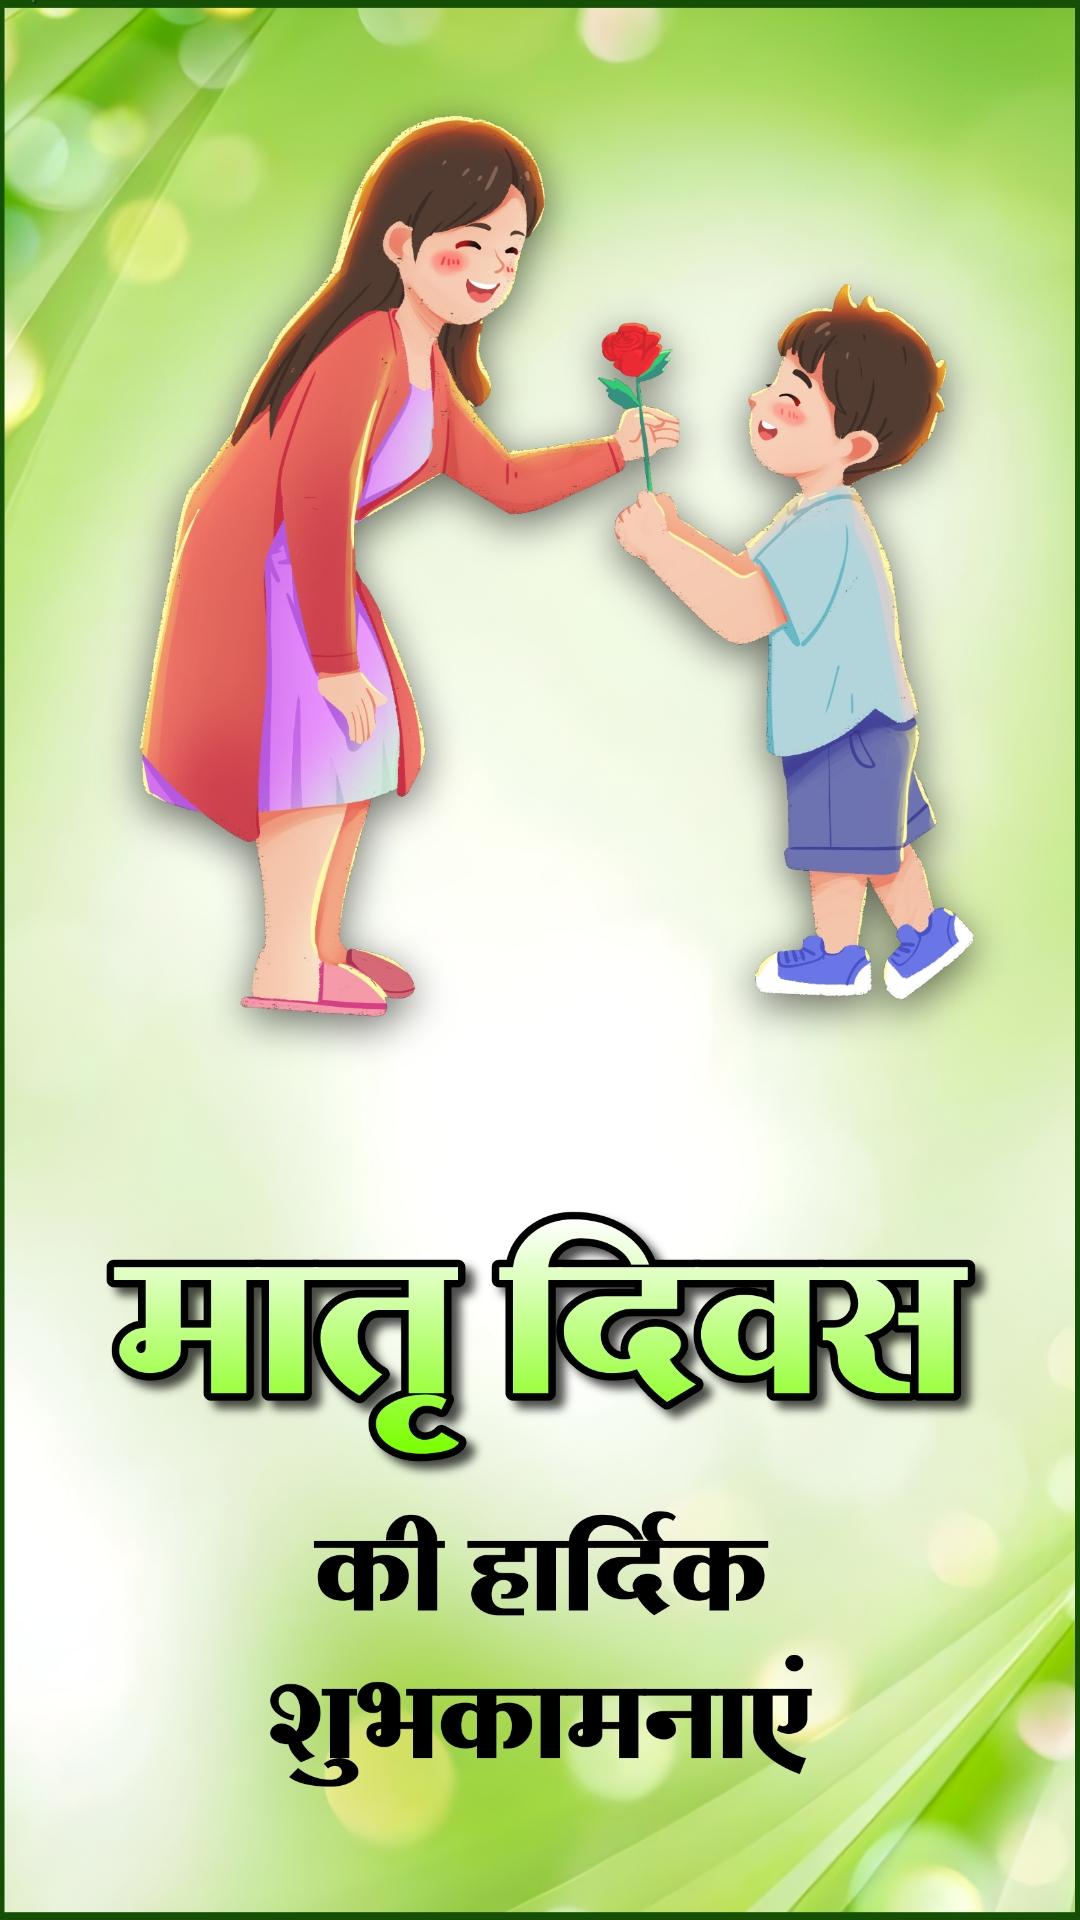 Matru Diwas Ki Hardik Shubhkamnaye Wallpaper in Hindi Download